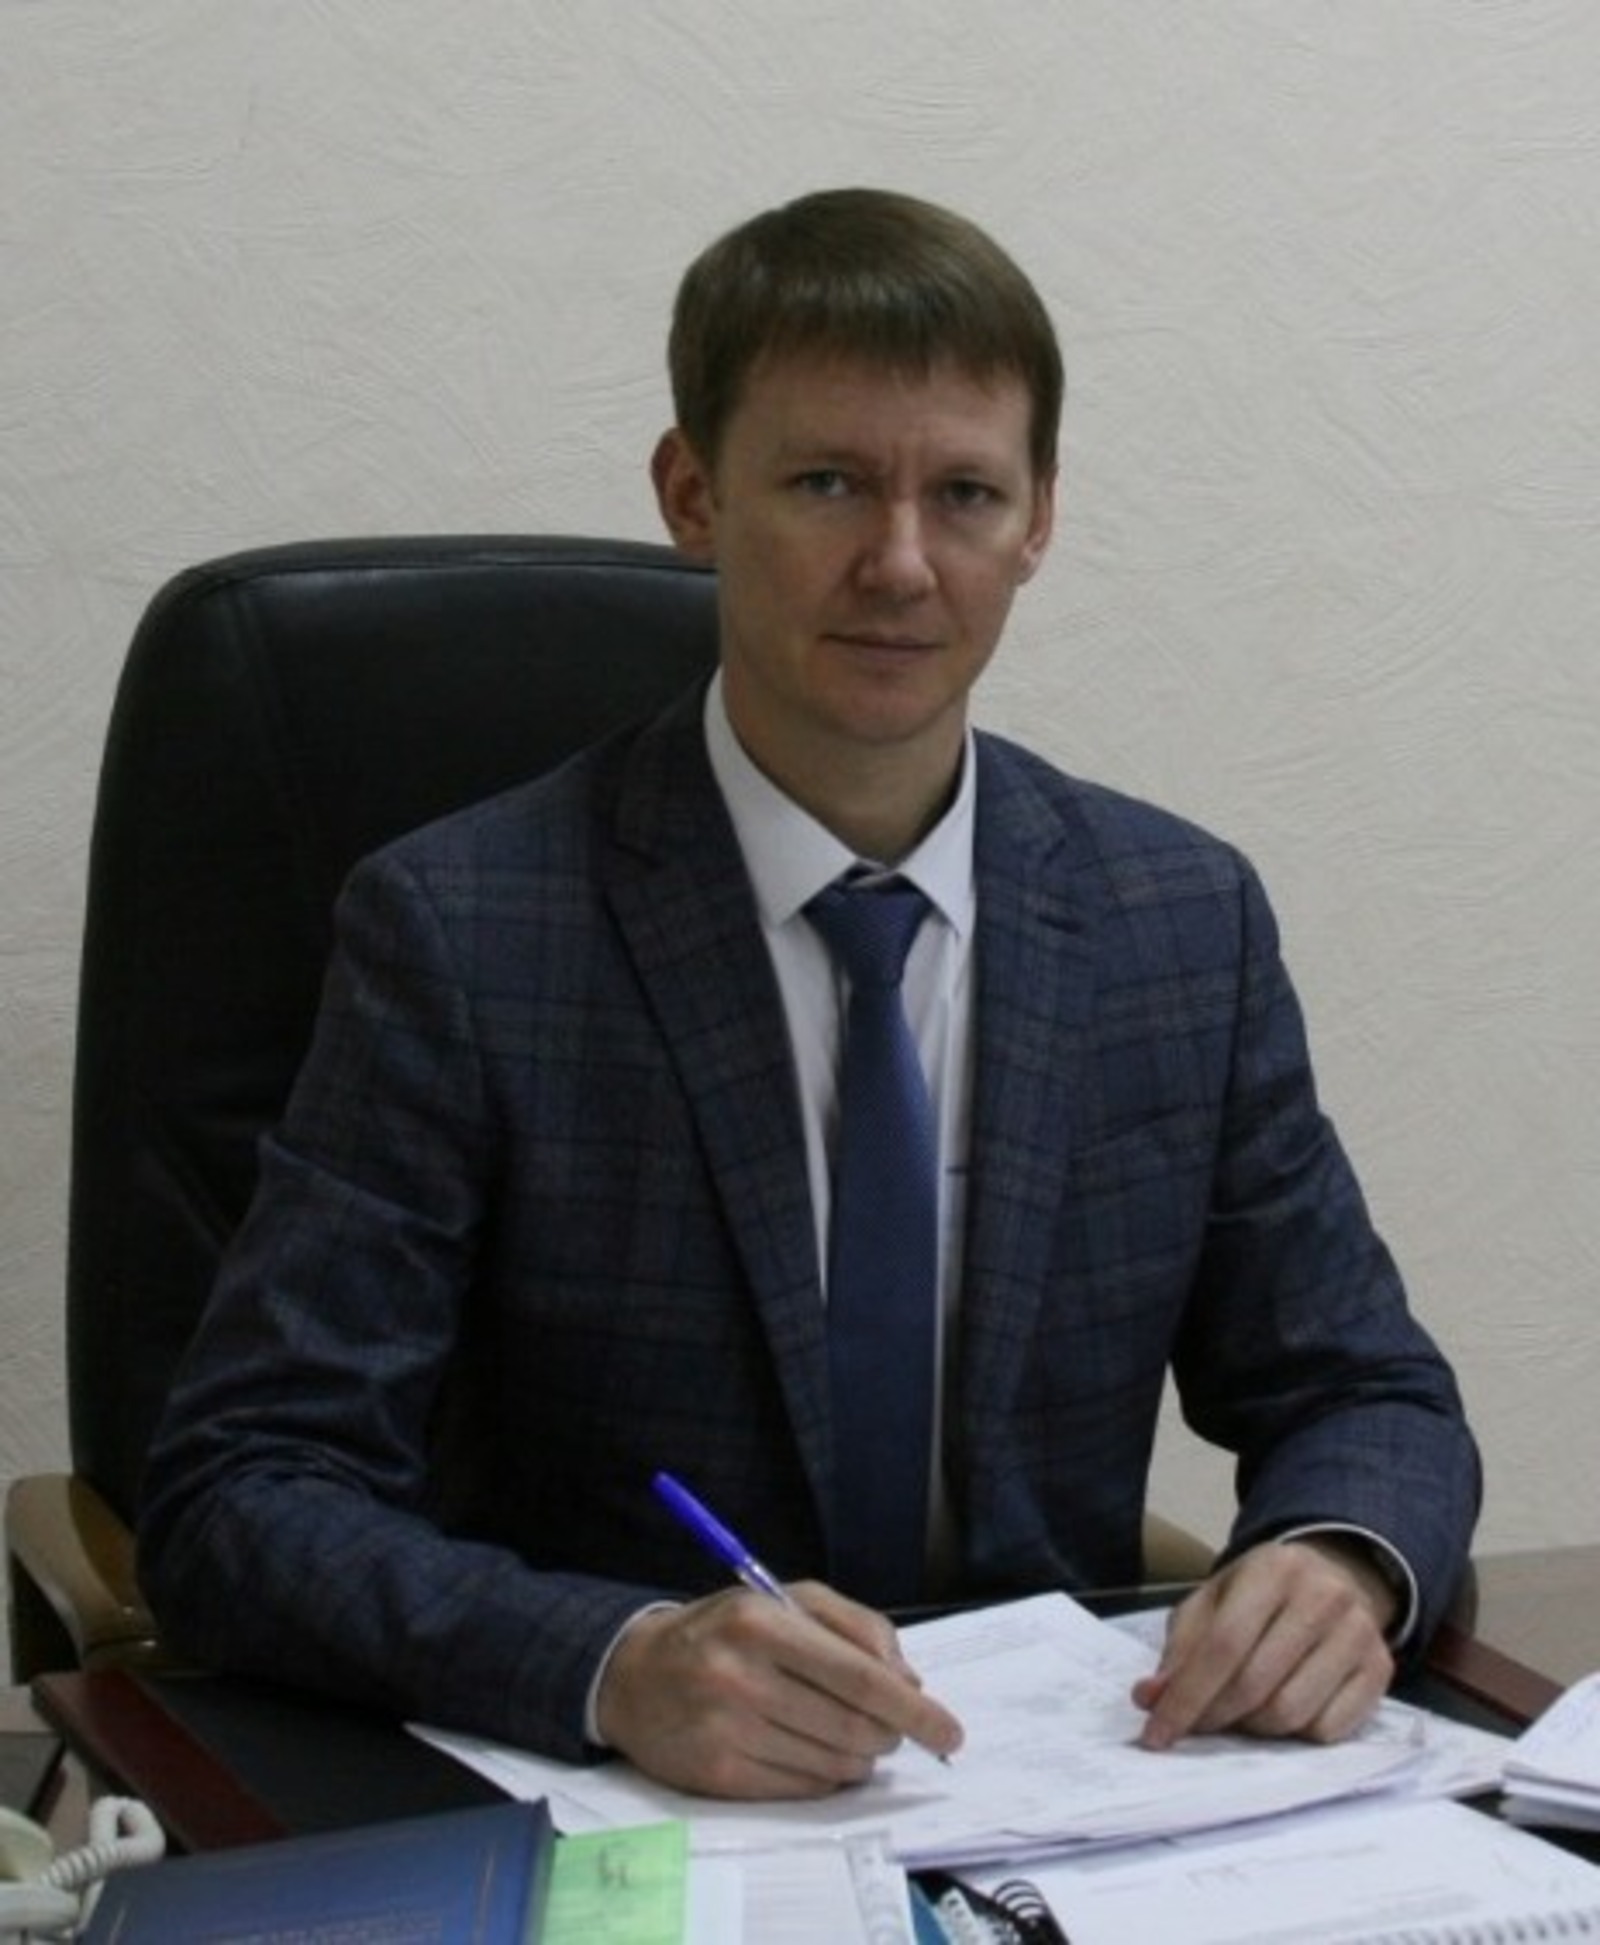 В рамках конгресса «Транспорт и строительство» академии наук Башкирии и Беларуси подпишут расширенное соглашение о сотрудничестве